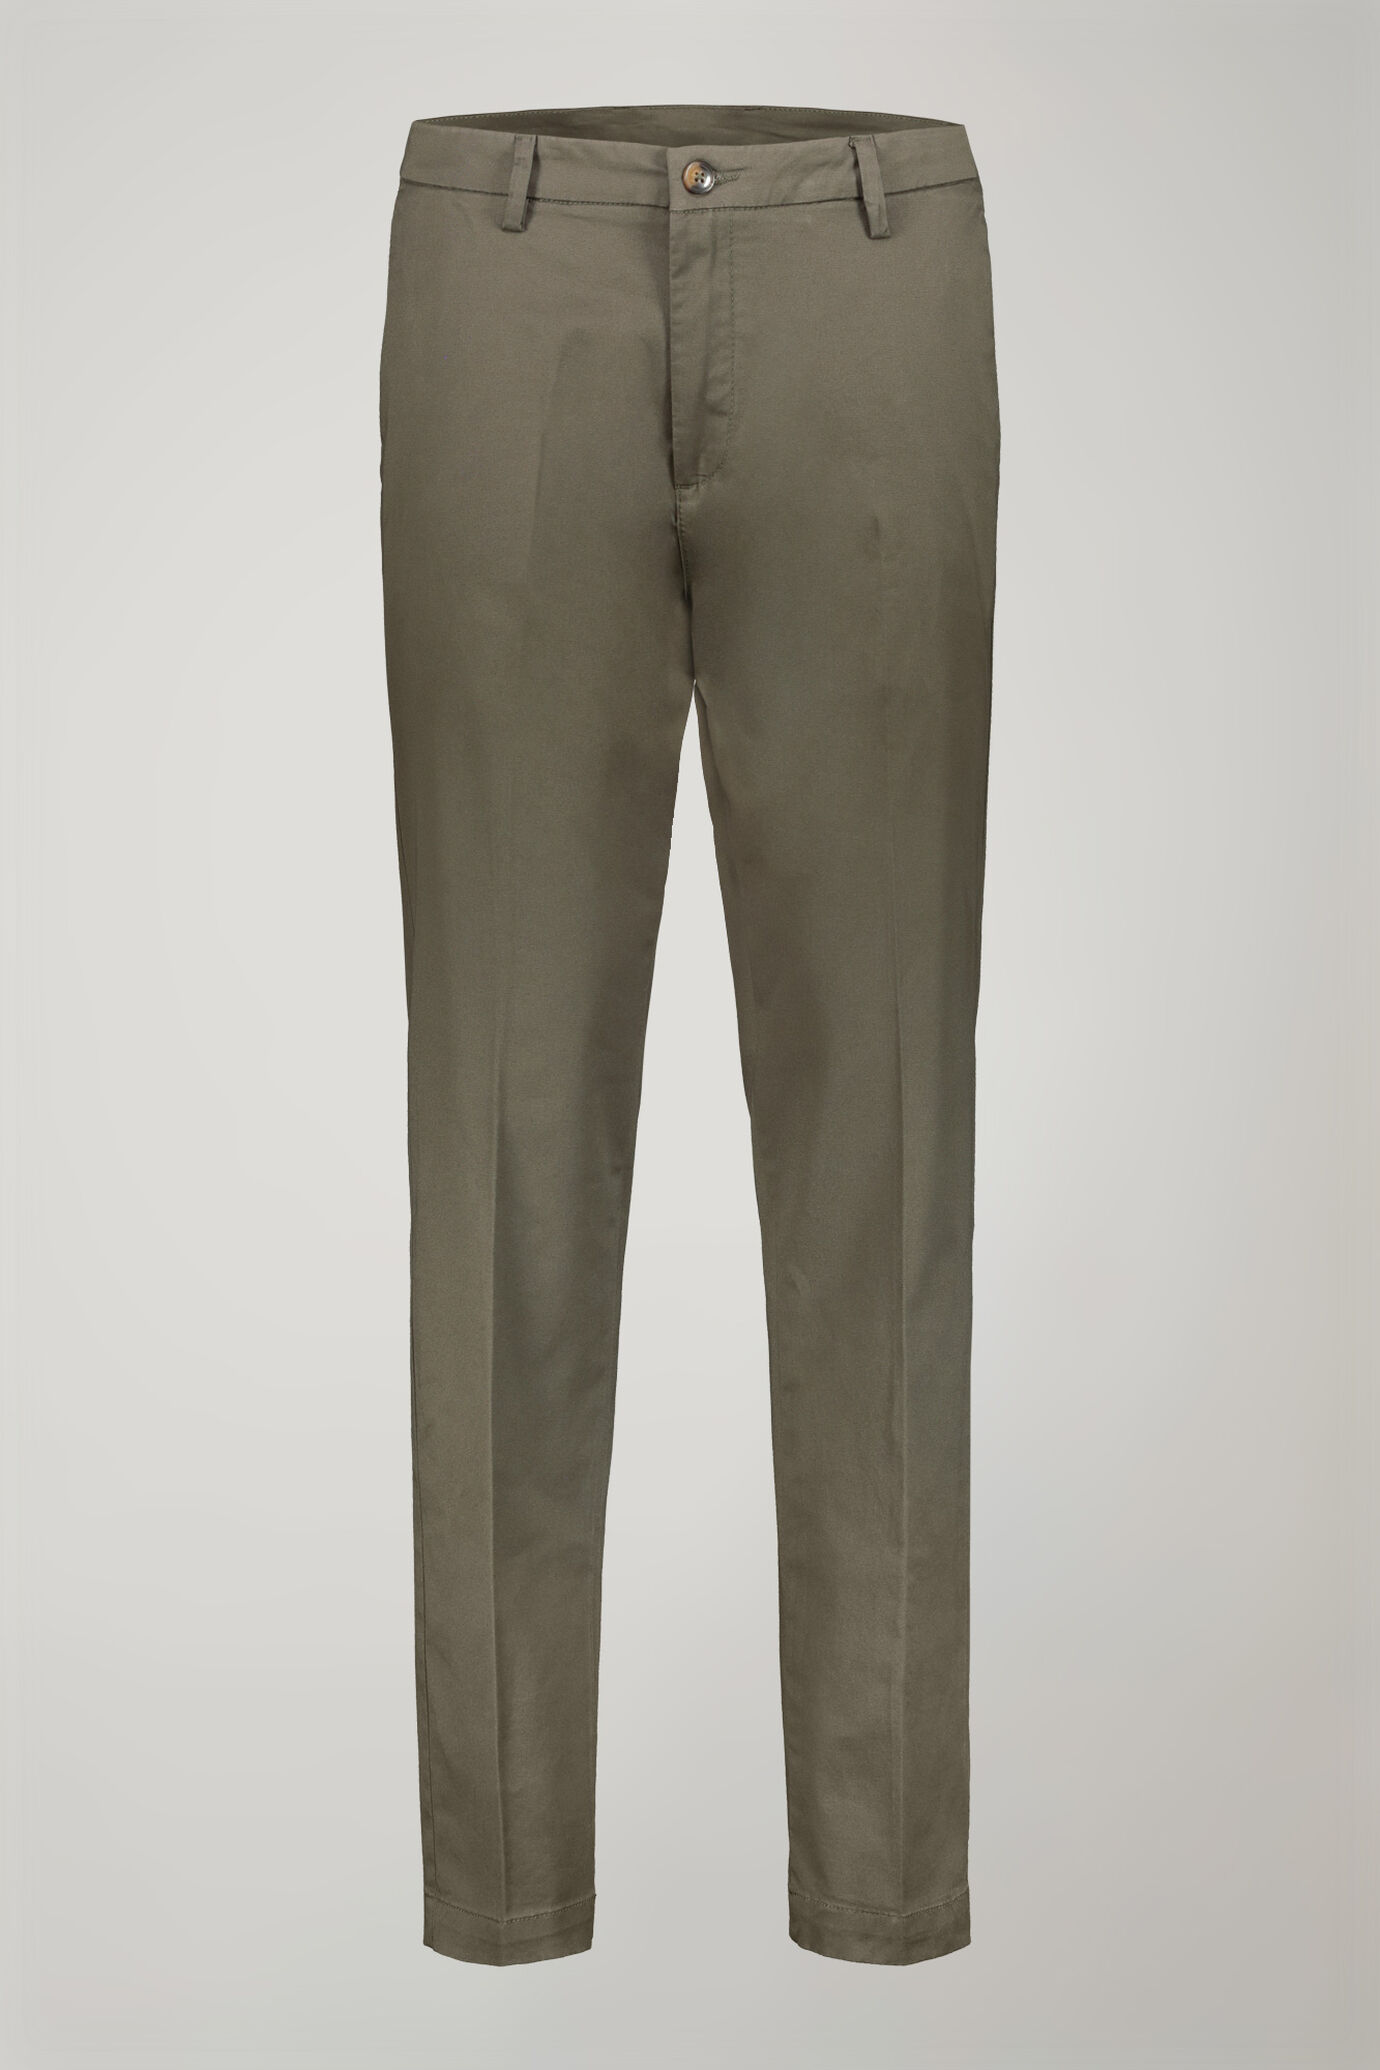 Pantalone chino uomo classico costruzione twill elasticizzato perfect fit image number 4